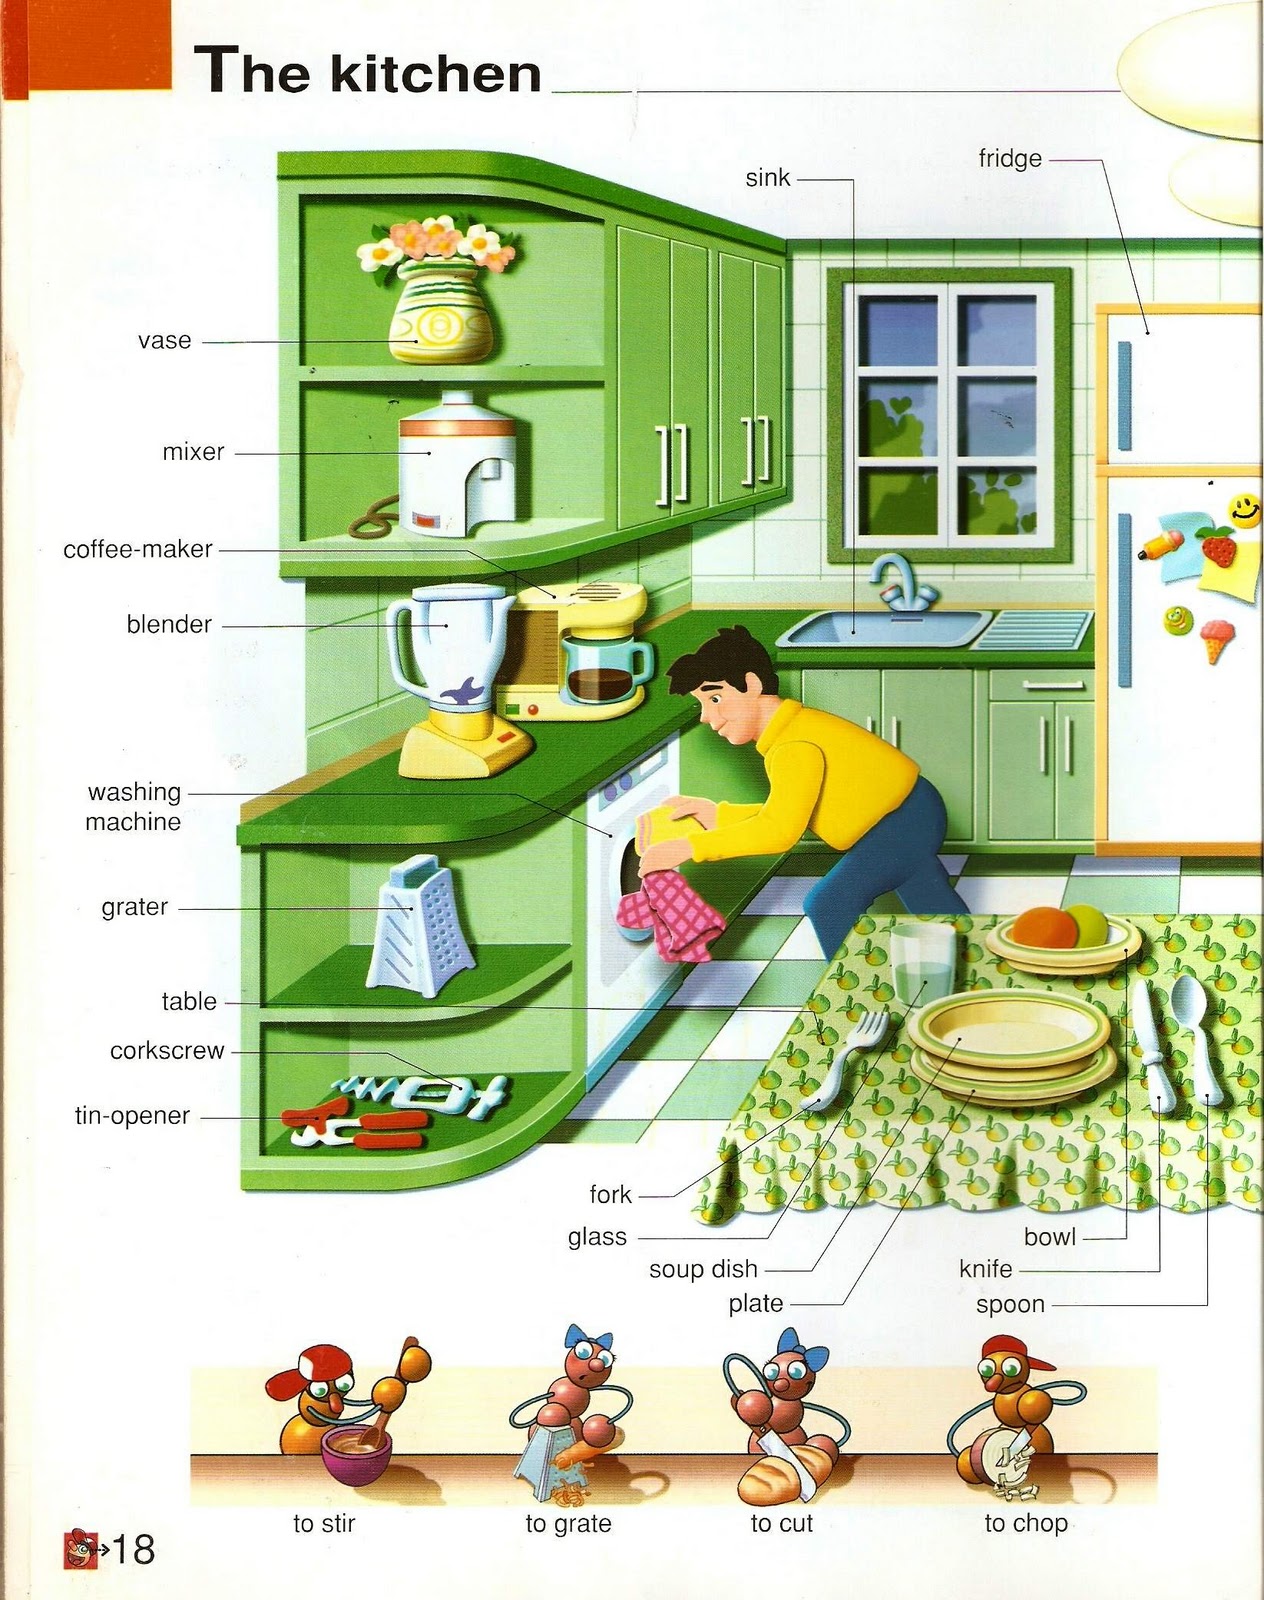 Правила на кухне на английском. Тема кухня на английском. Мебель кухни на английском языке. Кухонная мебель по английскому языку. Кухня Vocabulary.